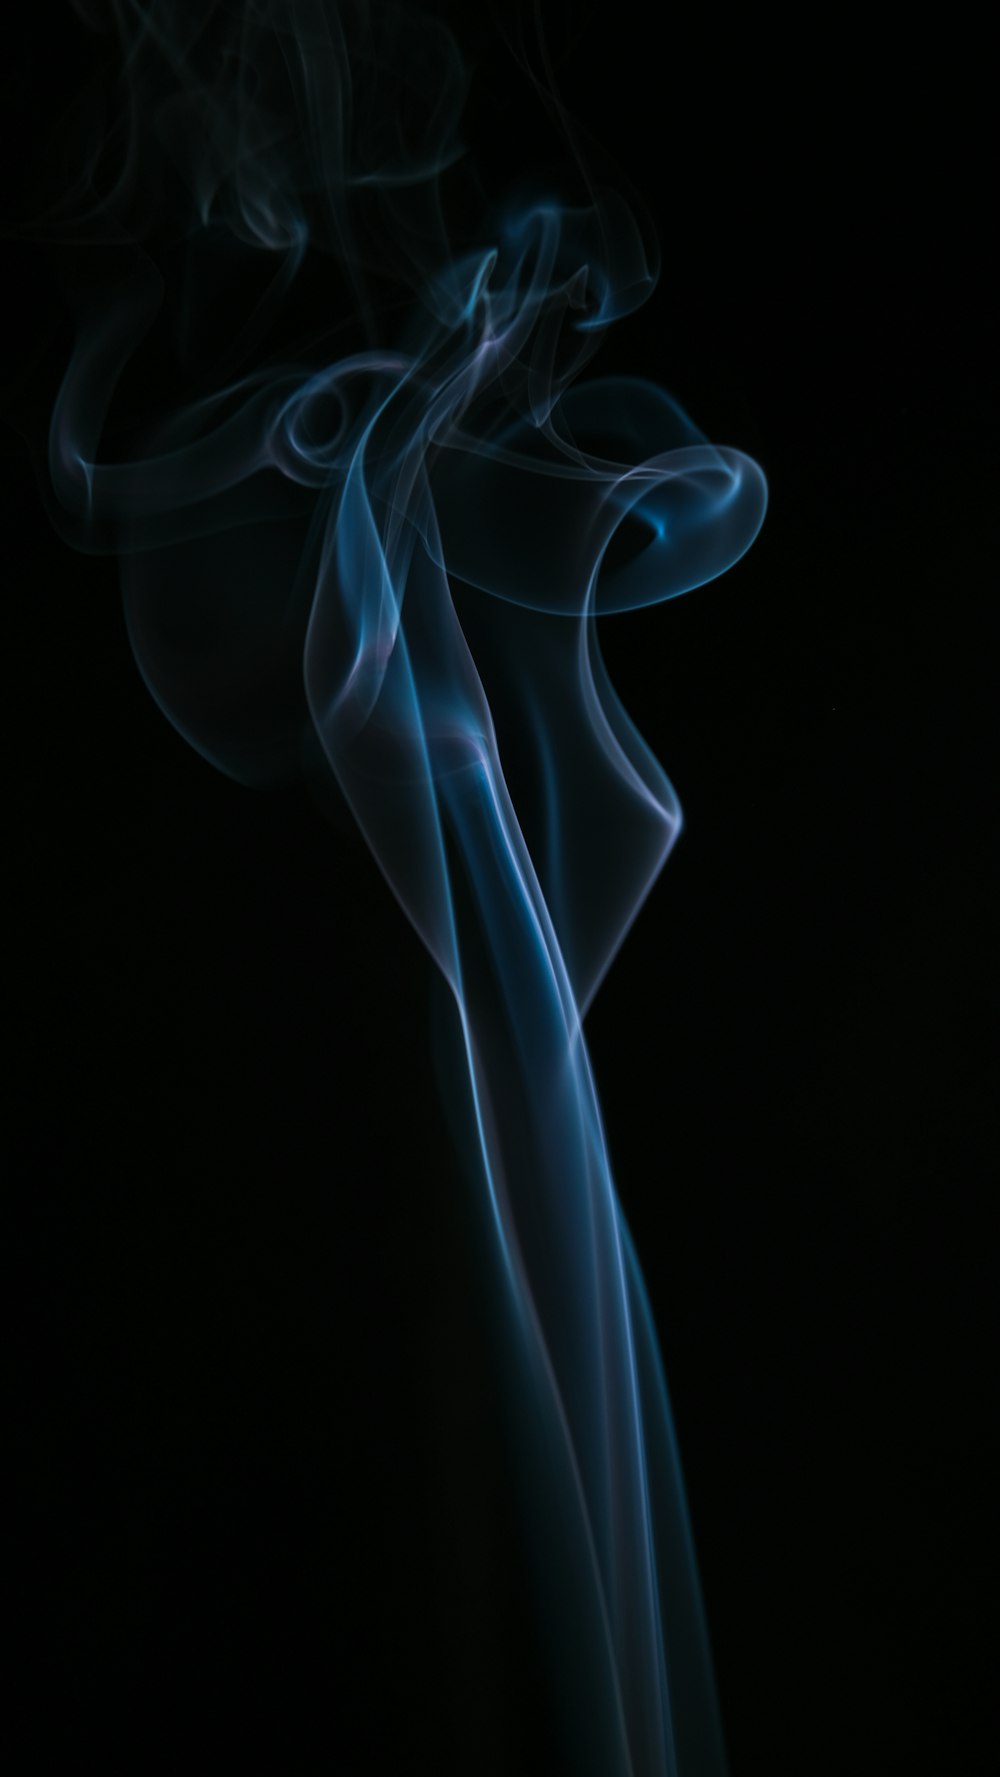 Ilustración de humo blanco y azul